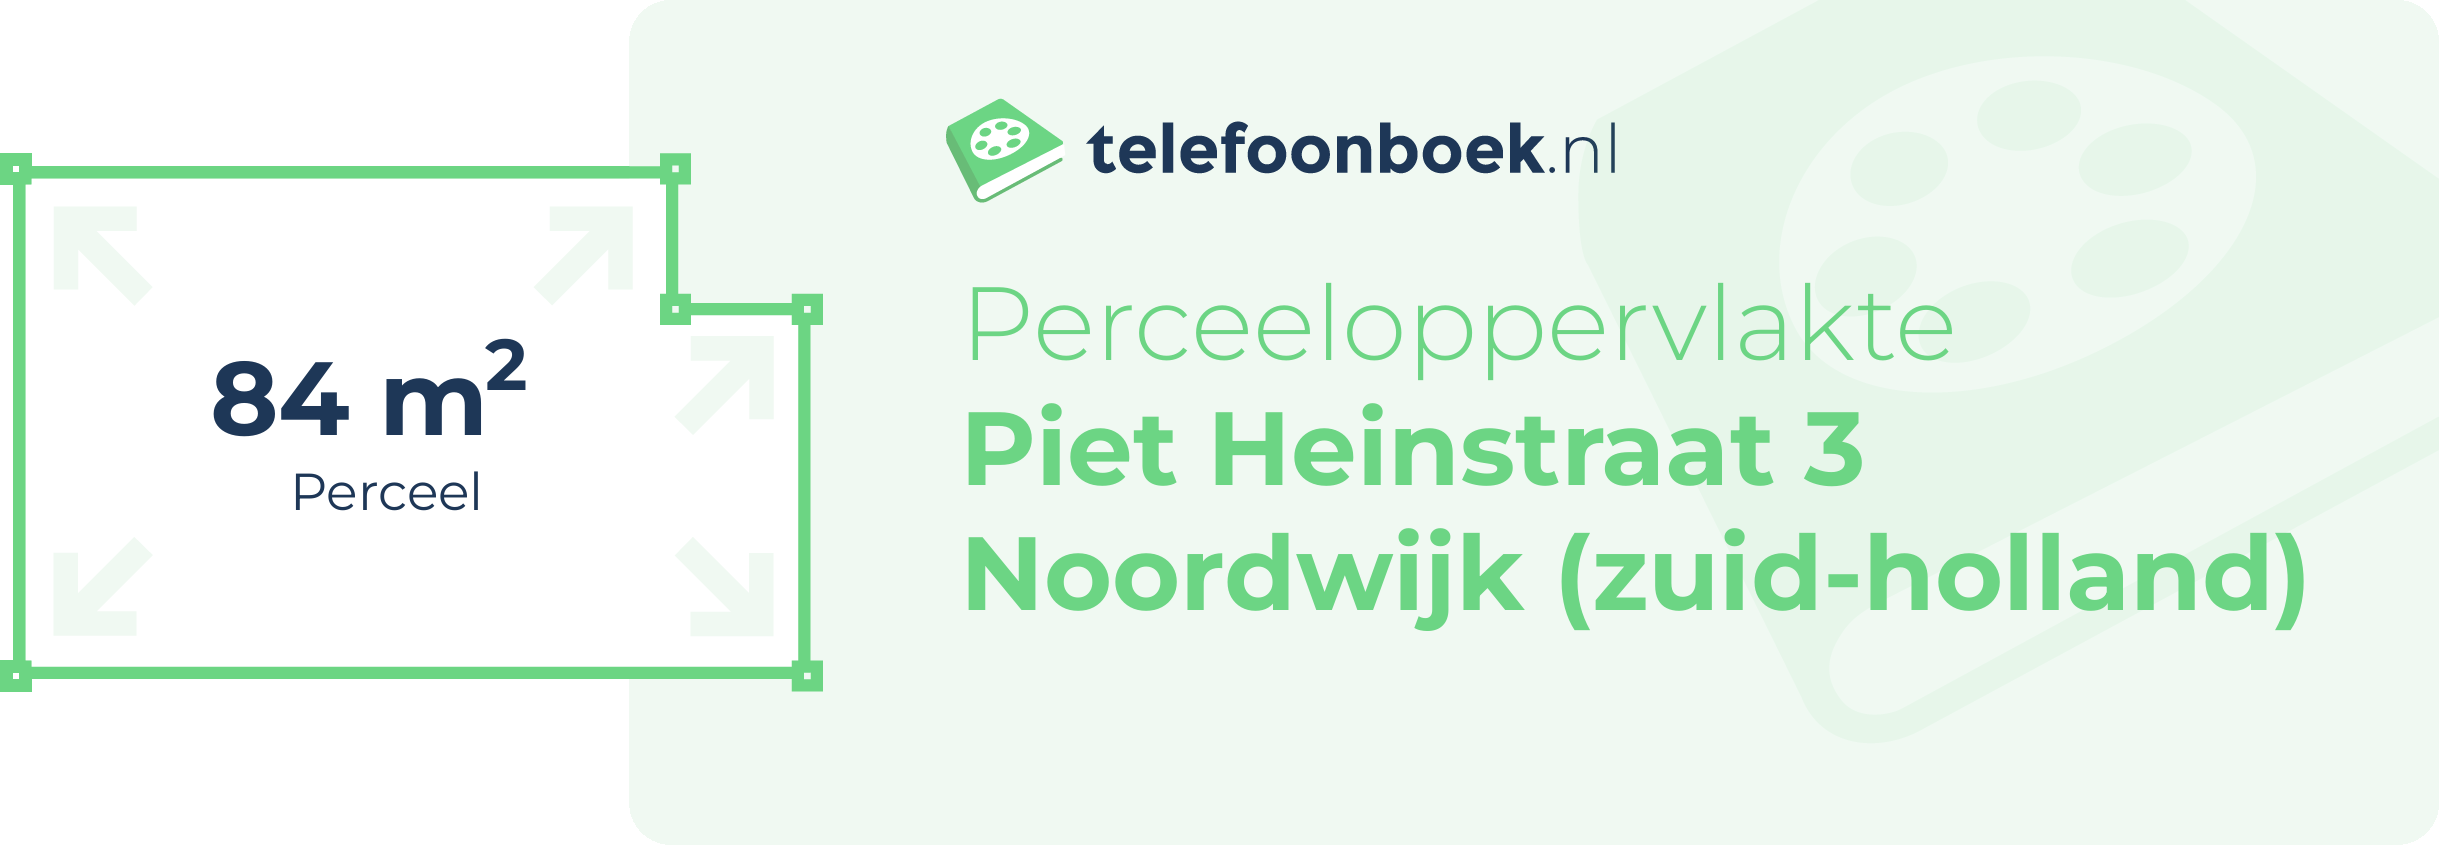 Perceeloppervlakte Piet Heinstraat 3 Noordwijk (Zuid-Holland)